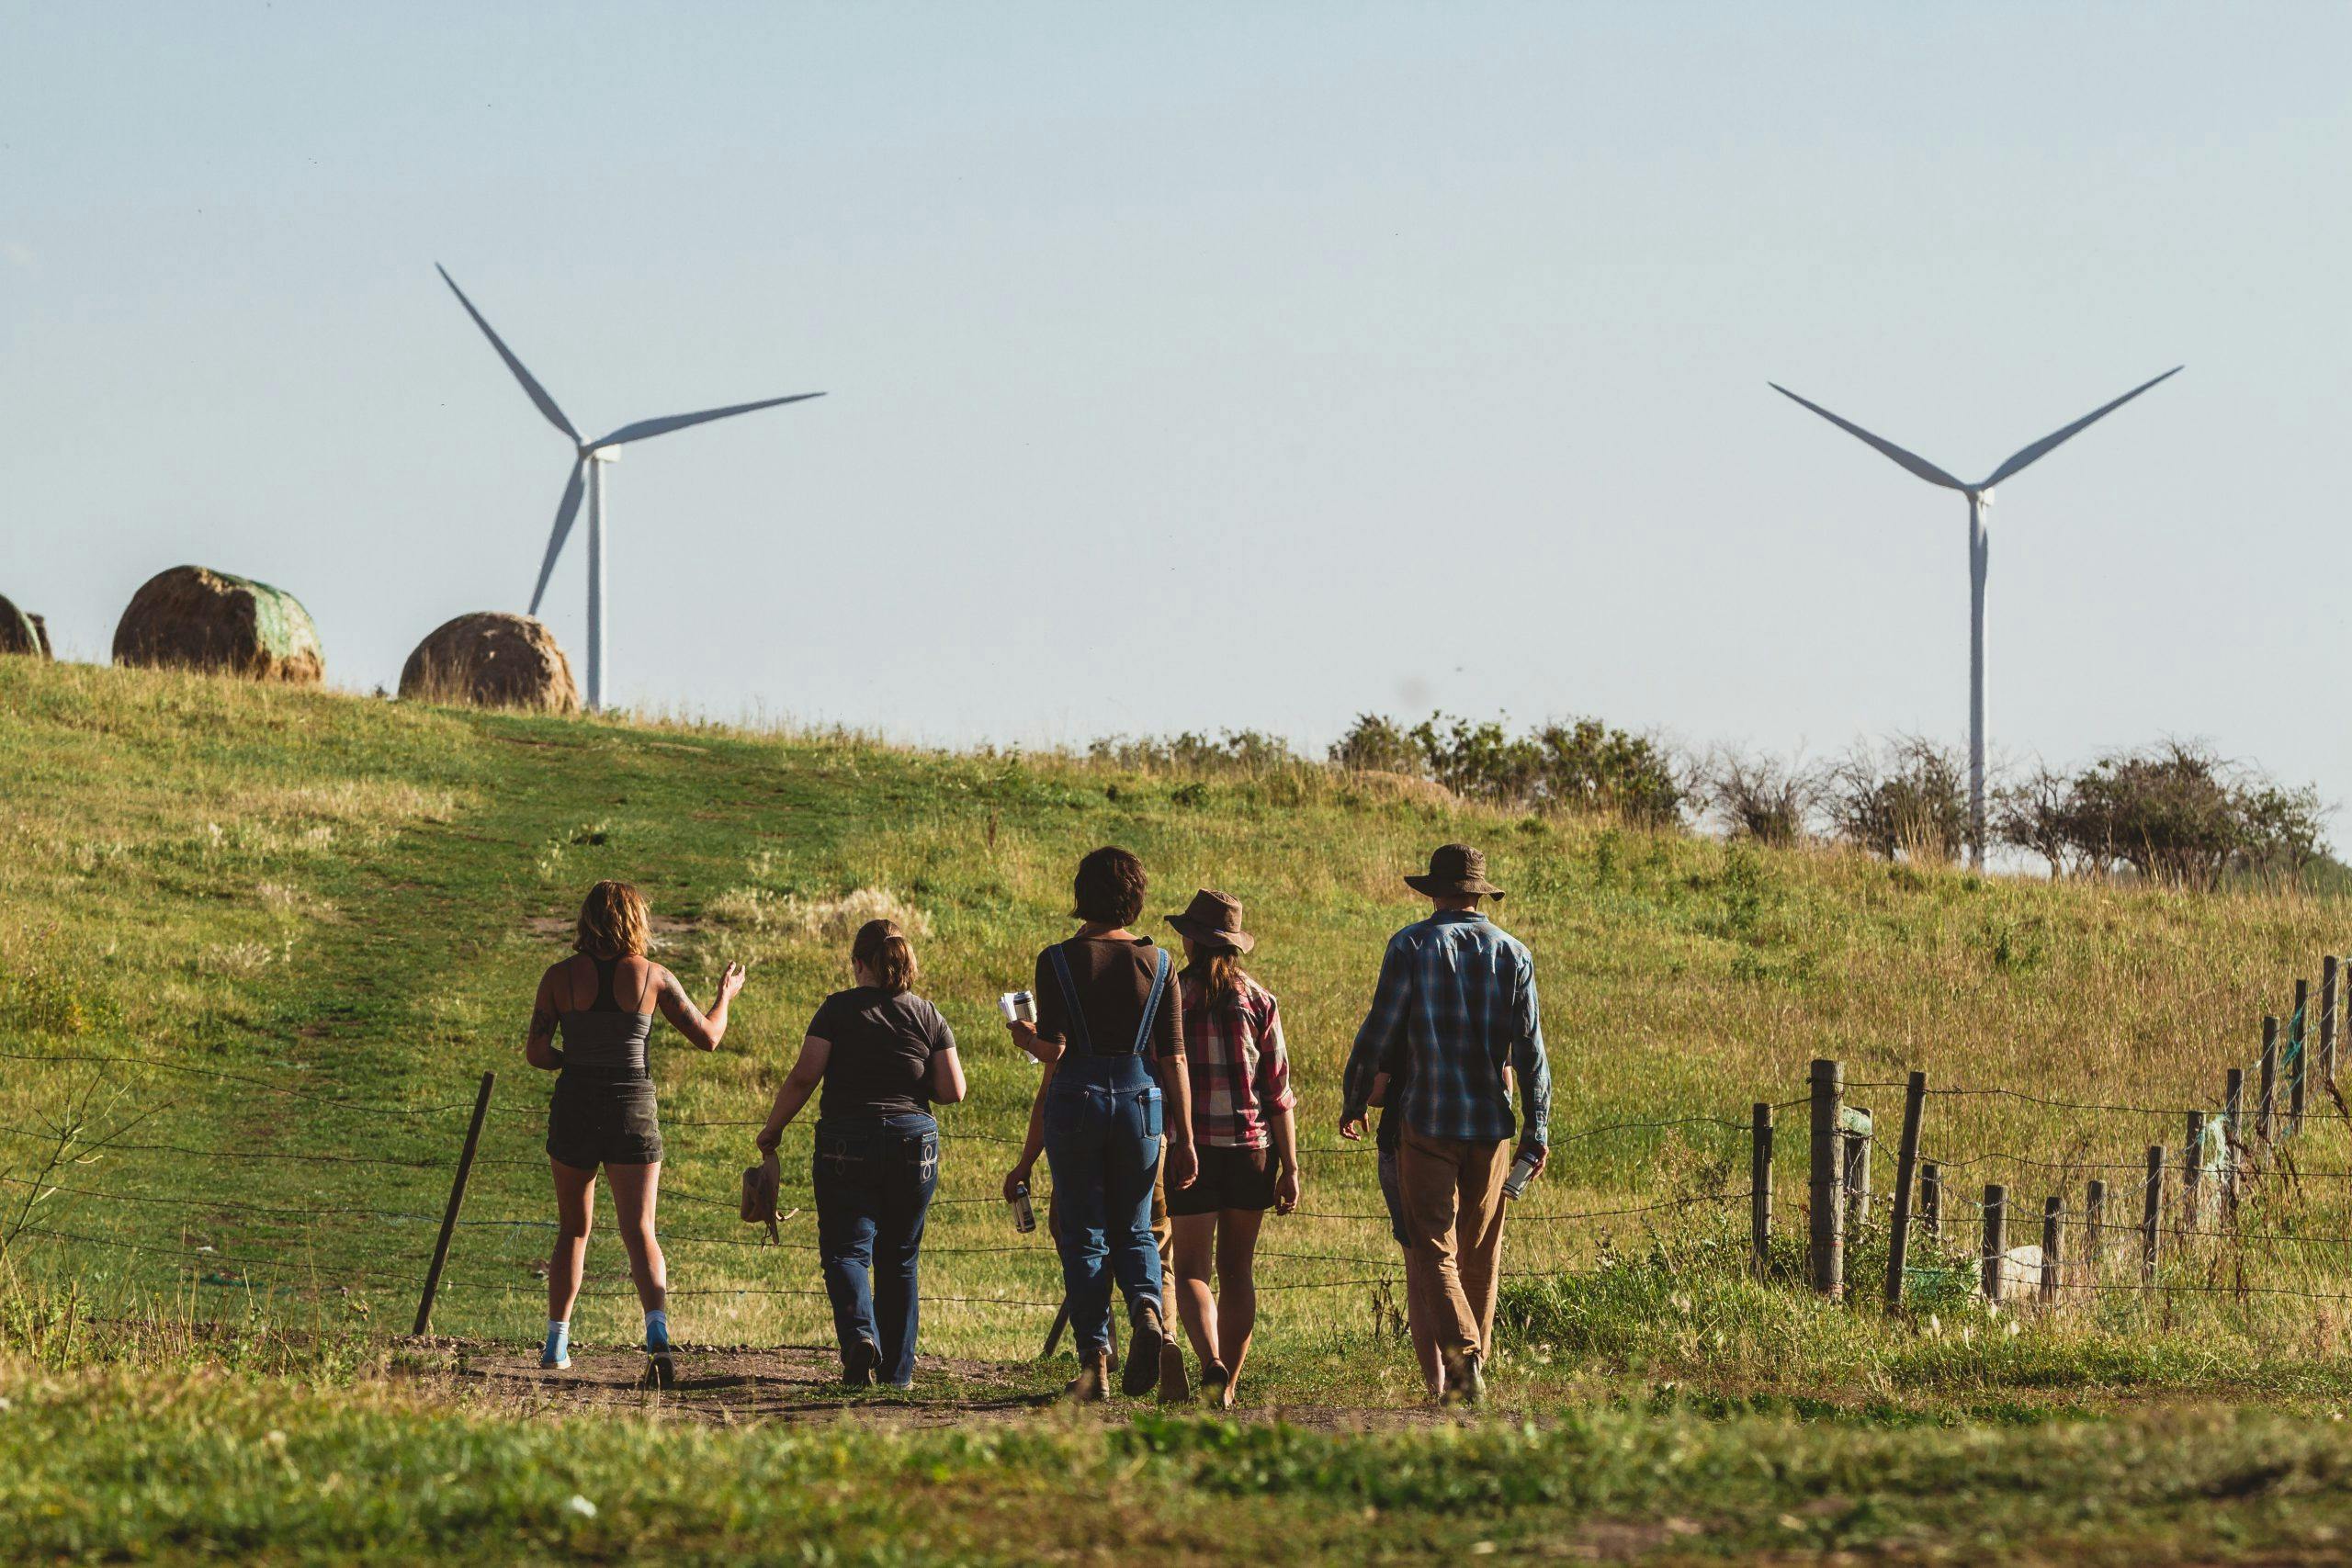 Five people overlook wind turbines in a green field